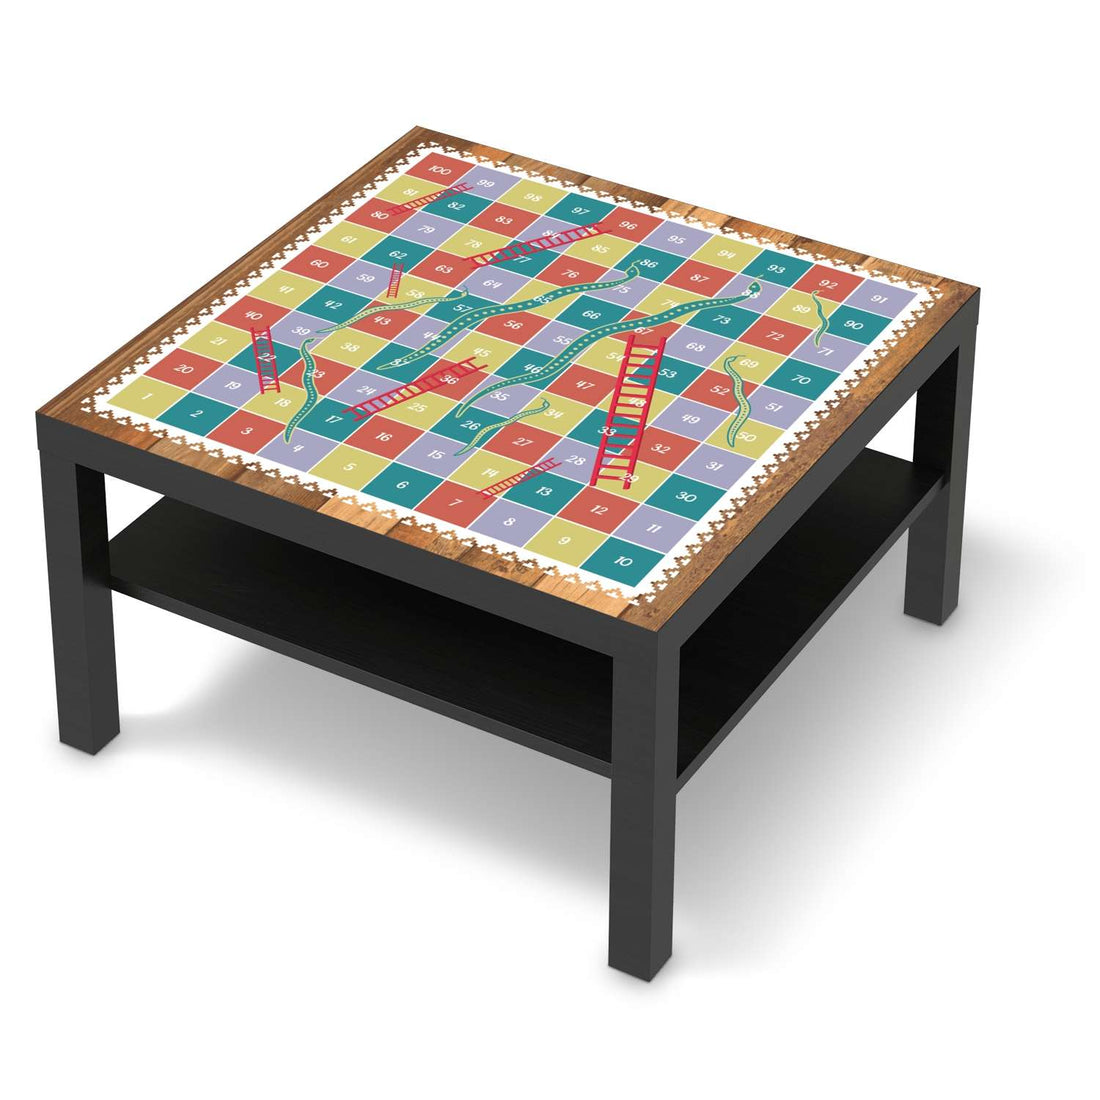 Selbstklebende Folie Spieltisch Leiternspiel - IKEA Lack Tisch 78x78 cm - schwarz